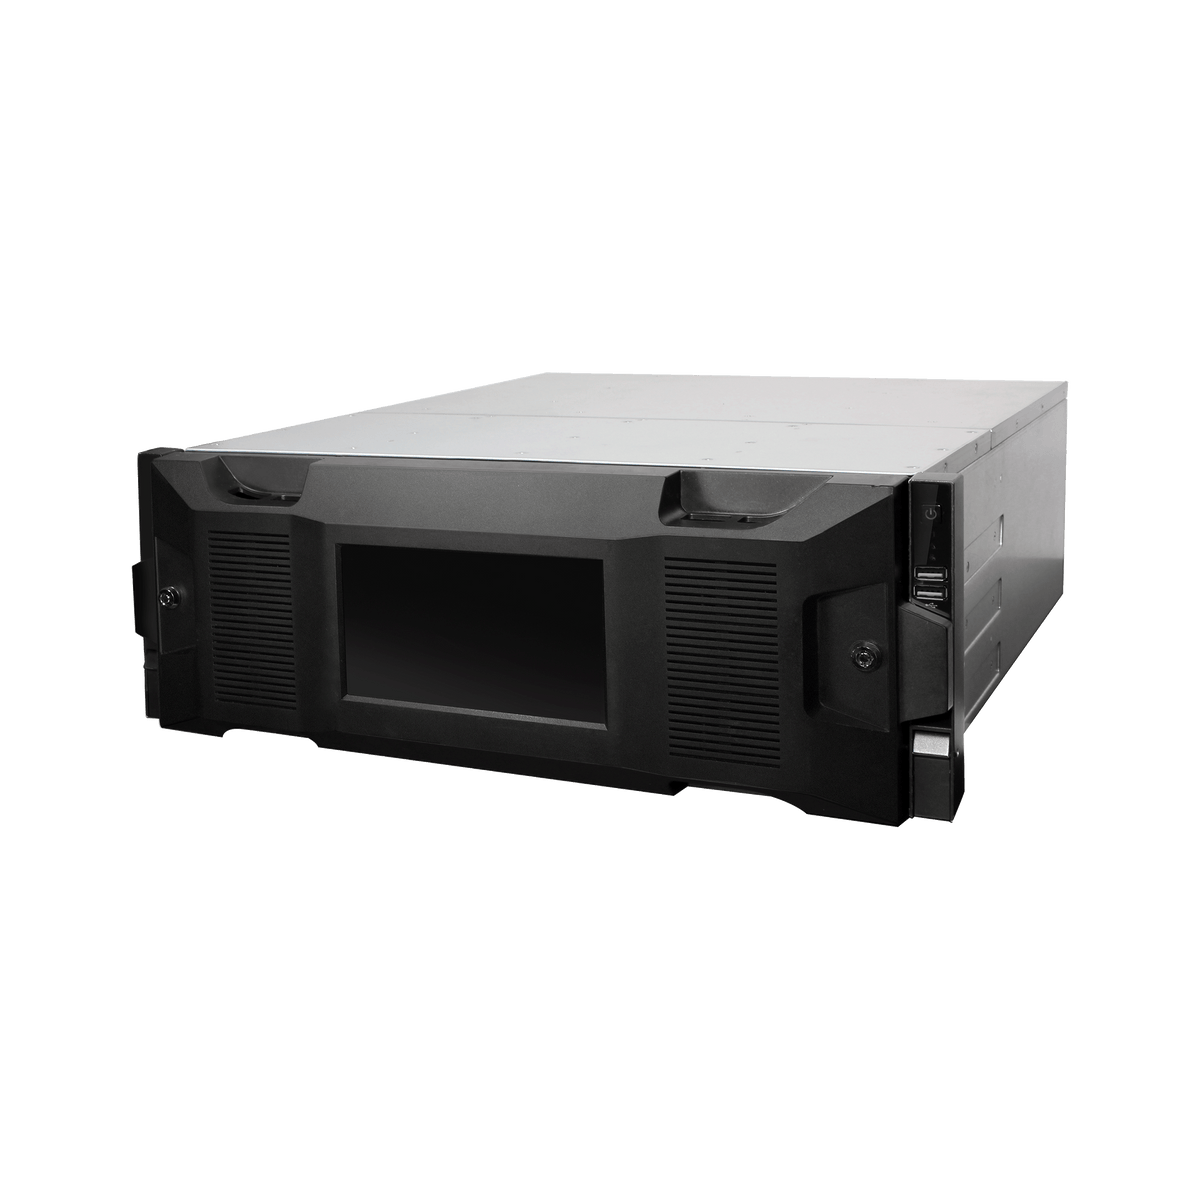 DAHUA IVSS7024DR-16M 4U 24HDDs WizMind Intelligent Video Surveillance Server